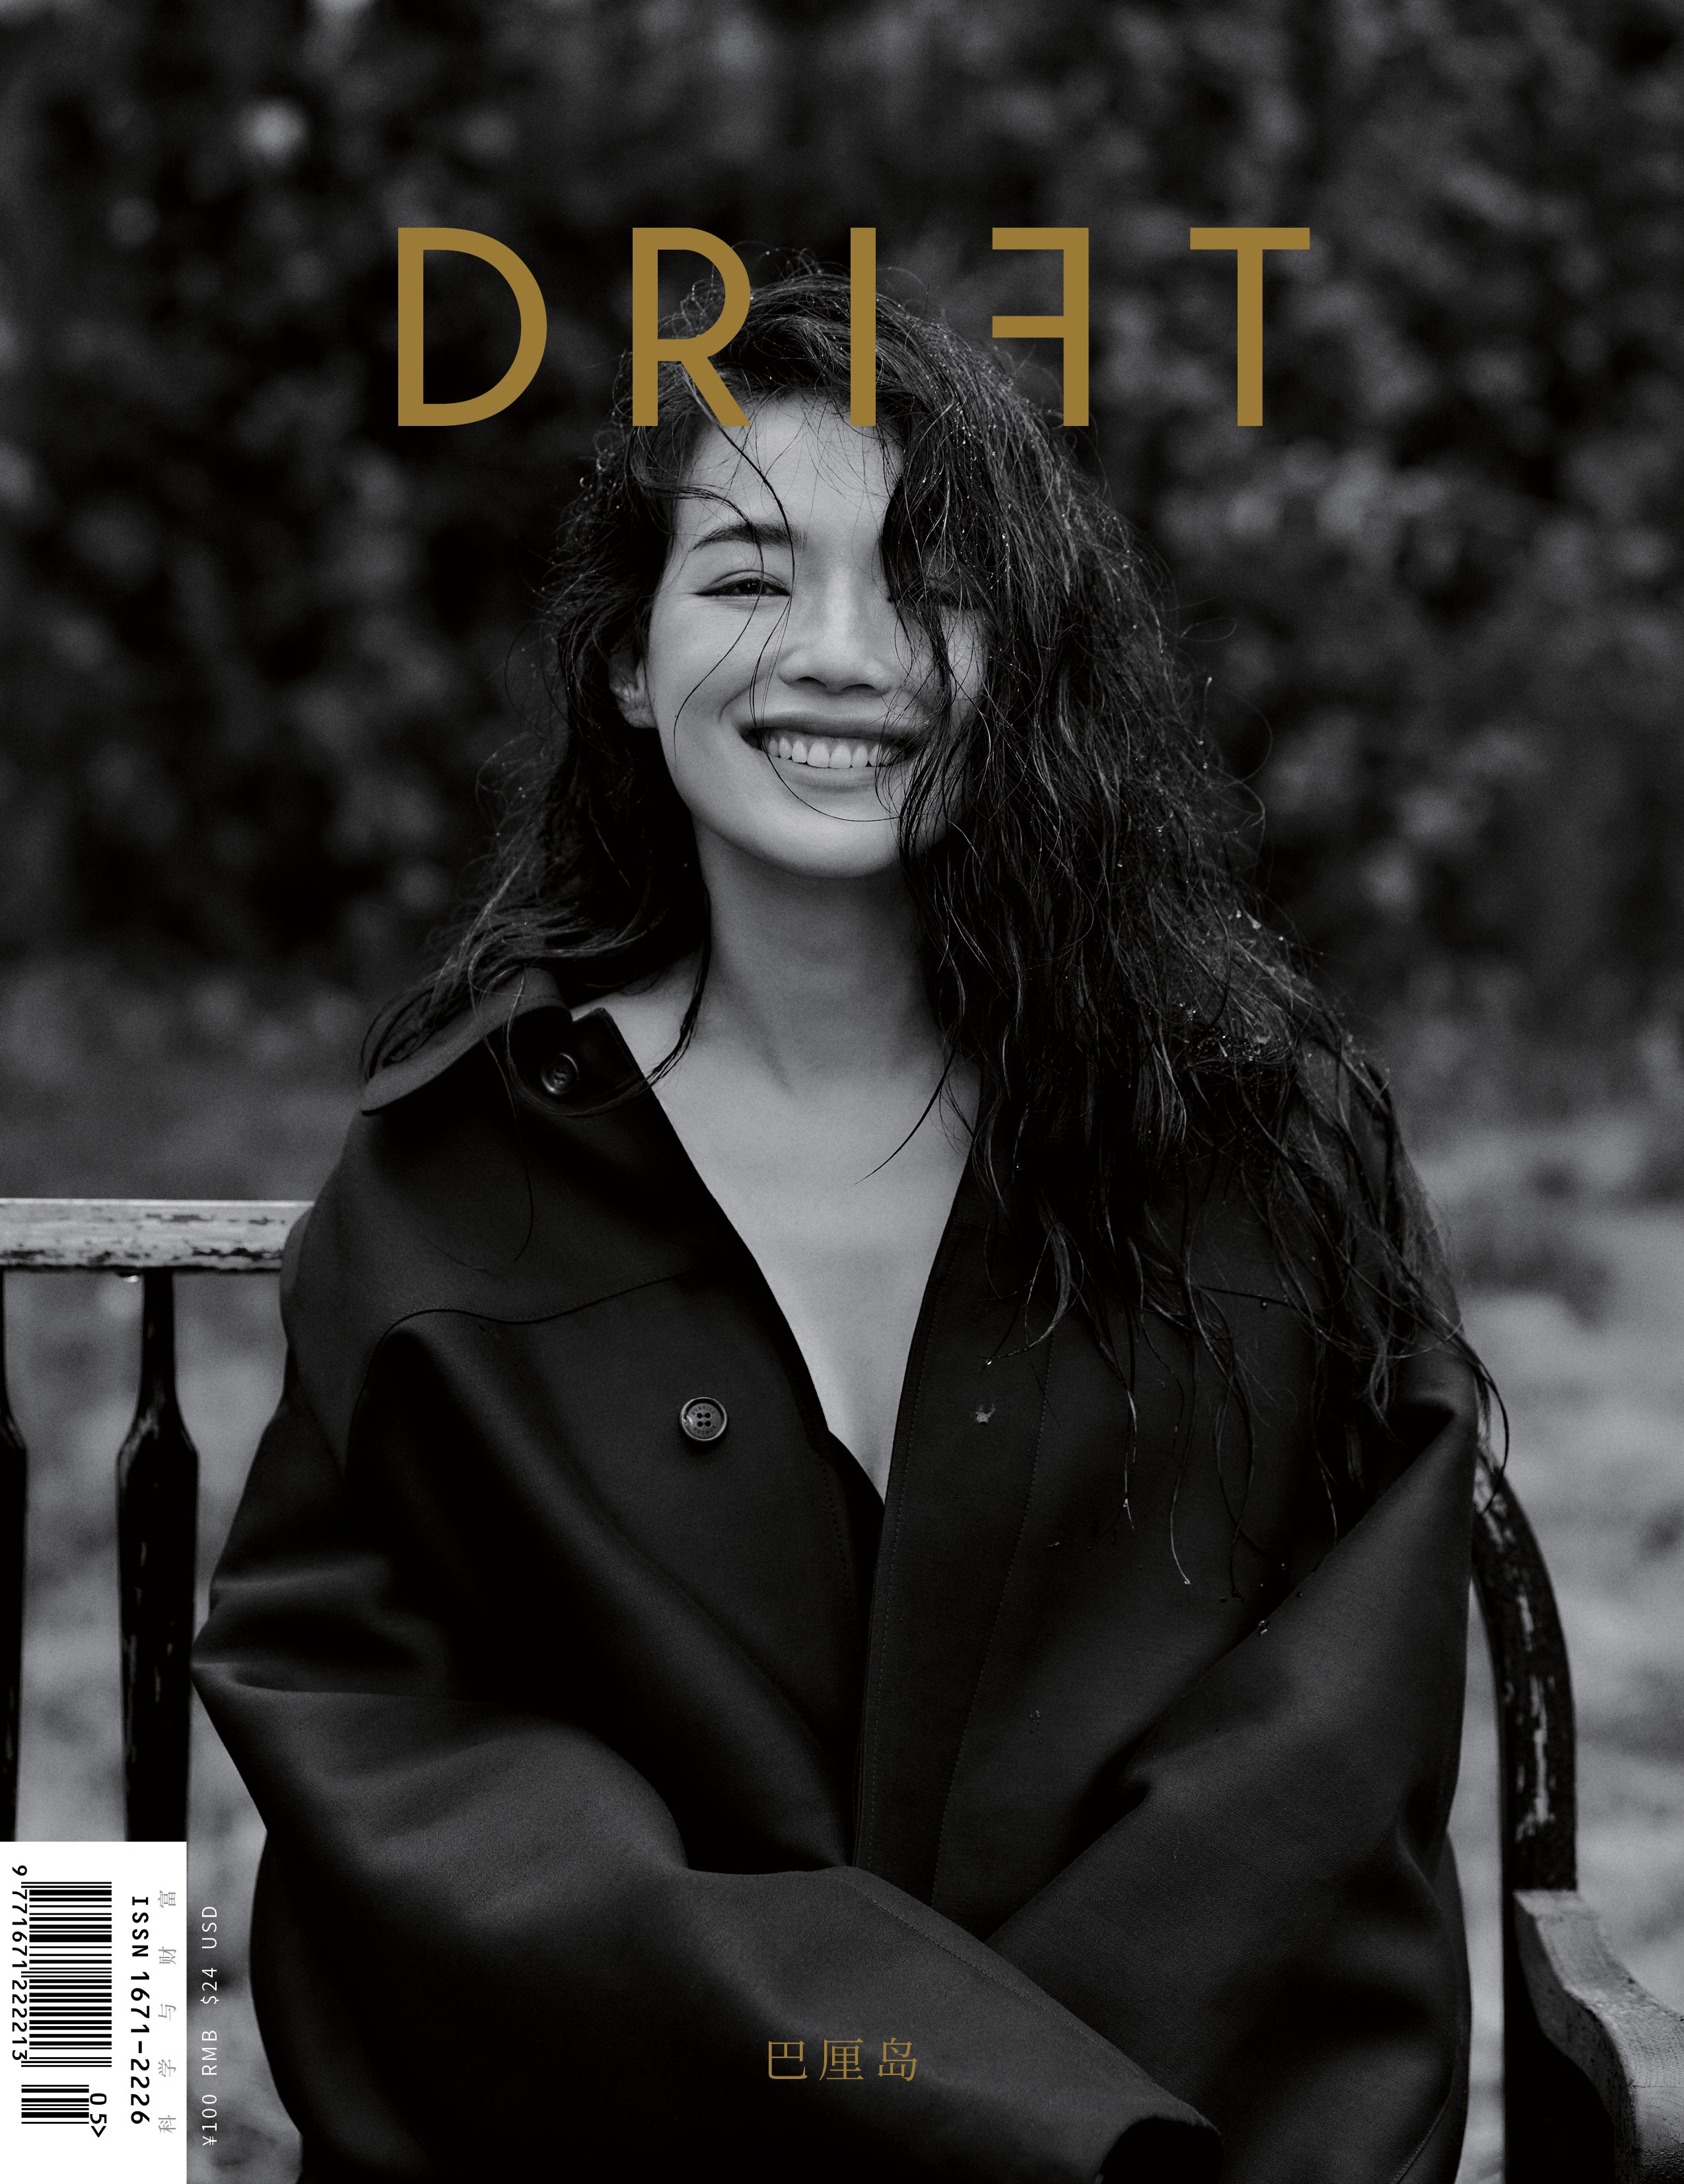 舒淇《DRIFT》夏季刊封面大片释出 在雨后惬意时光中感受浪漫诗意